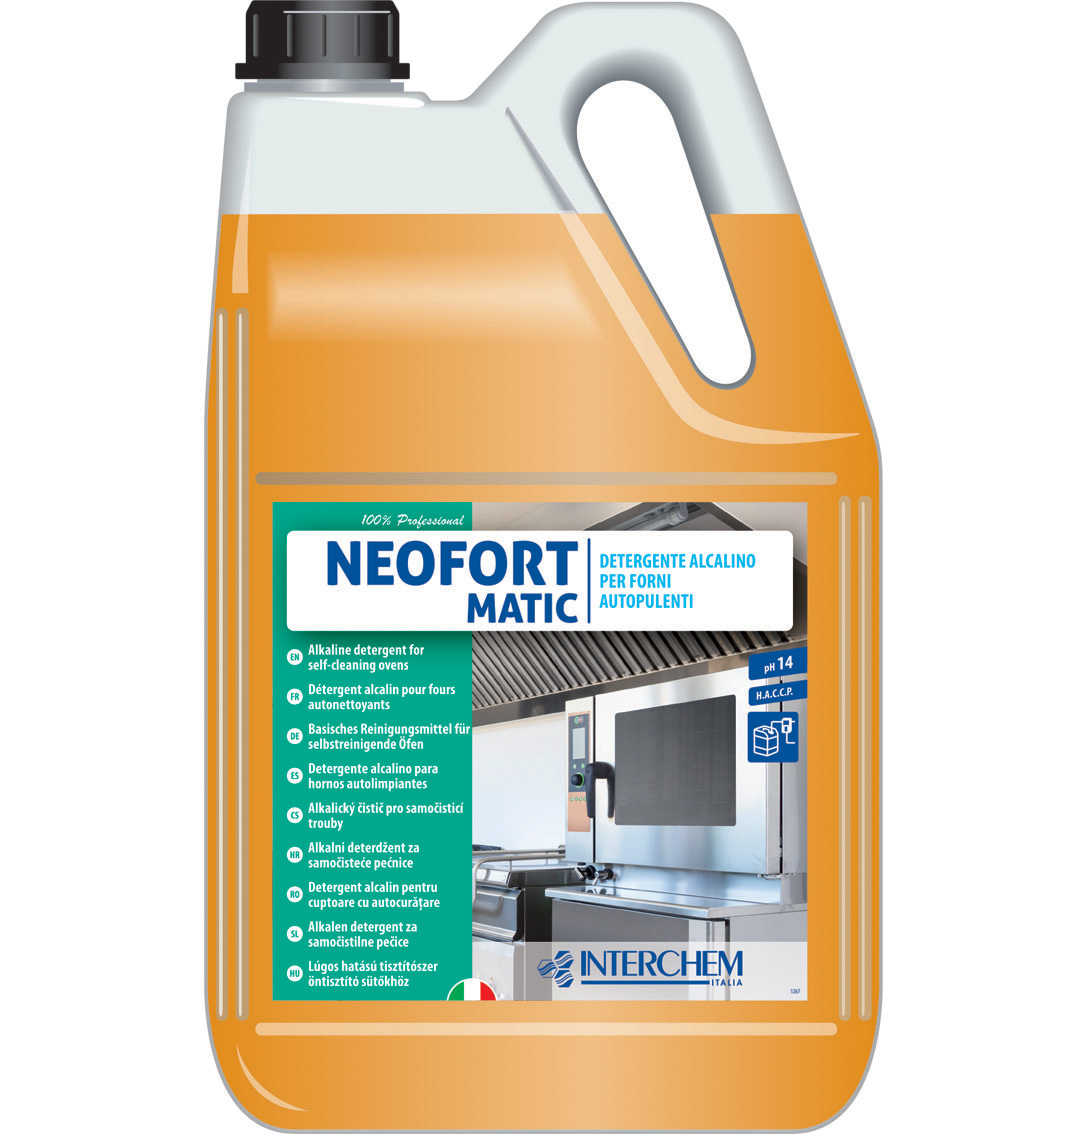 Detergente per forni autopulenti Neofort Matic 5 litri